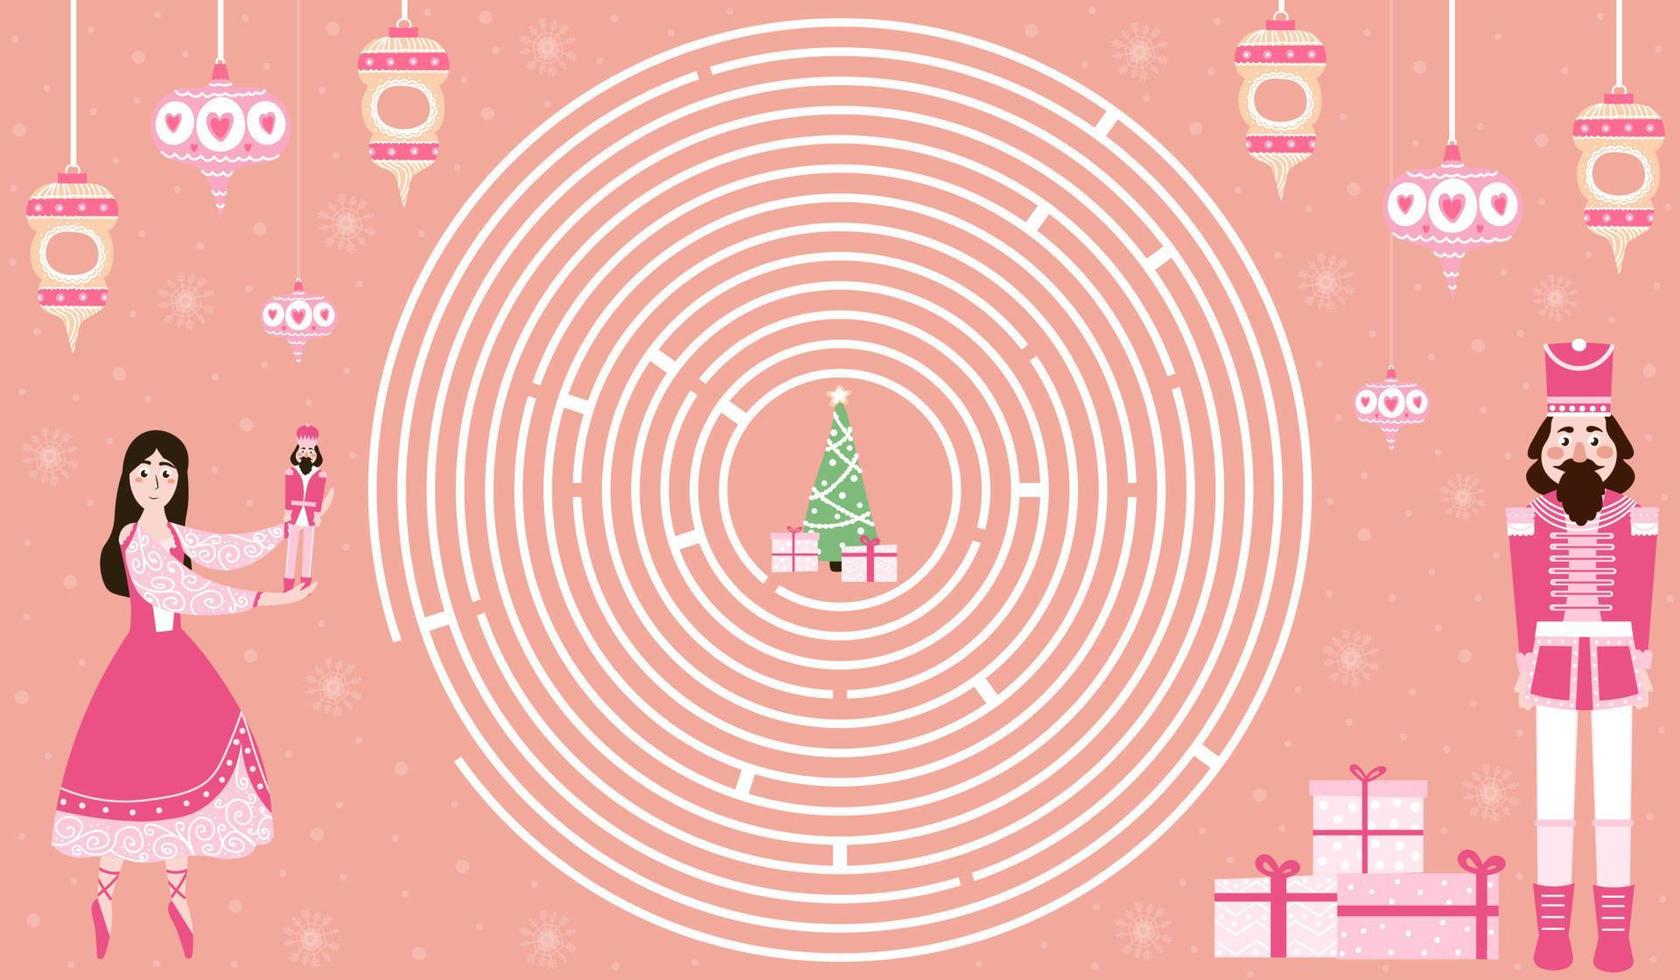 Natale cerchio labirinto con schiaccianoci personaggio e ballerina, Aiuto per trova giusto modo per natale albero, stampabile logico foglio di lavoro per bambini per inverno vacanze su rosa sfondo vettore